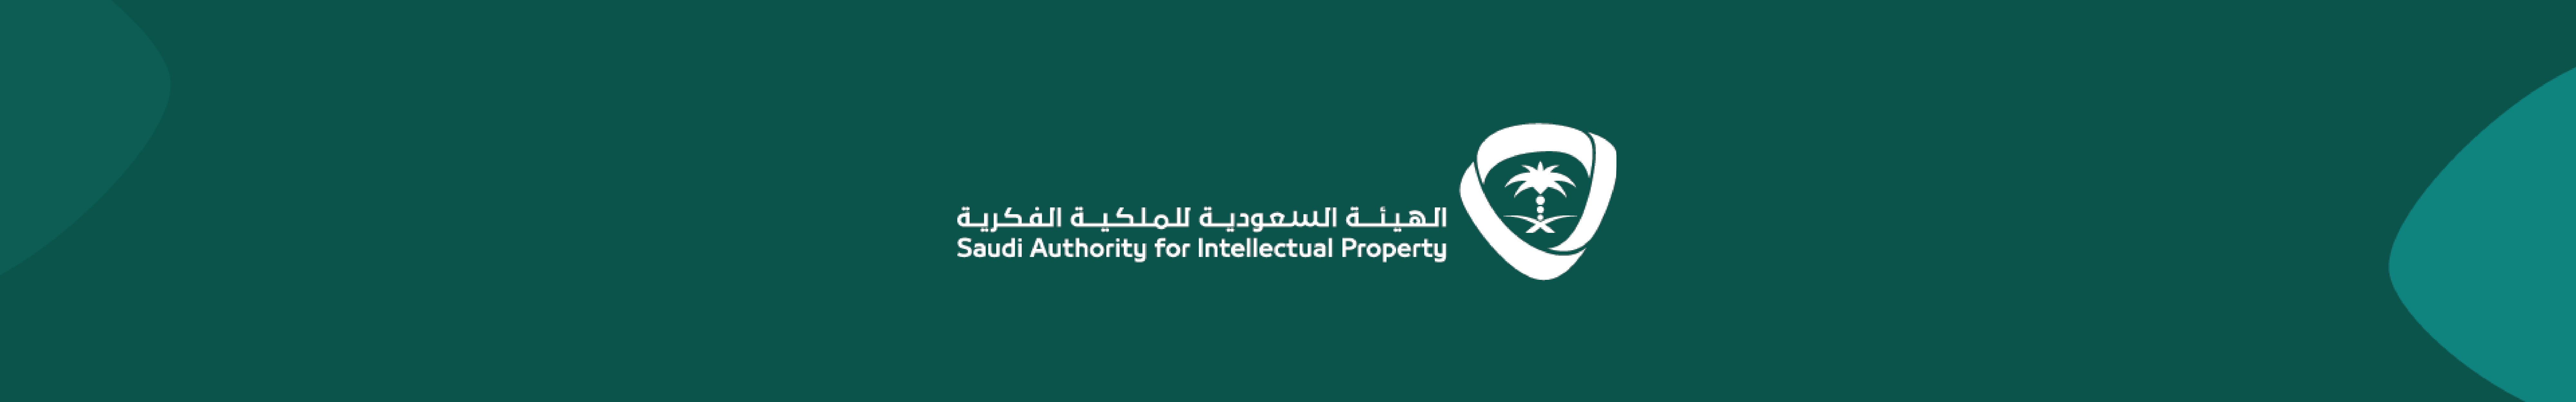 التسجيل في برنامج تدريبي عن تعبئة وثائق الطلب لمجالات الملكية الفكرية وتصنيفات حقوق الملكية الفكرية